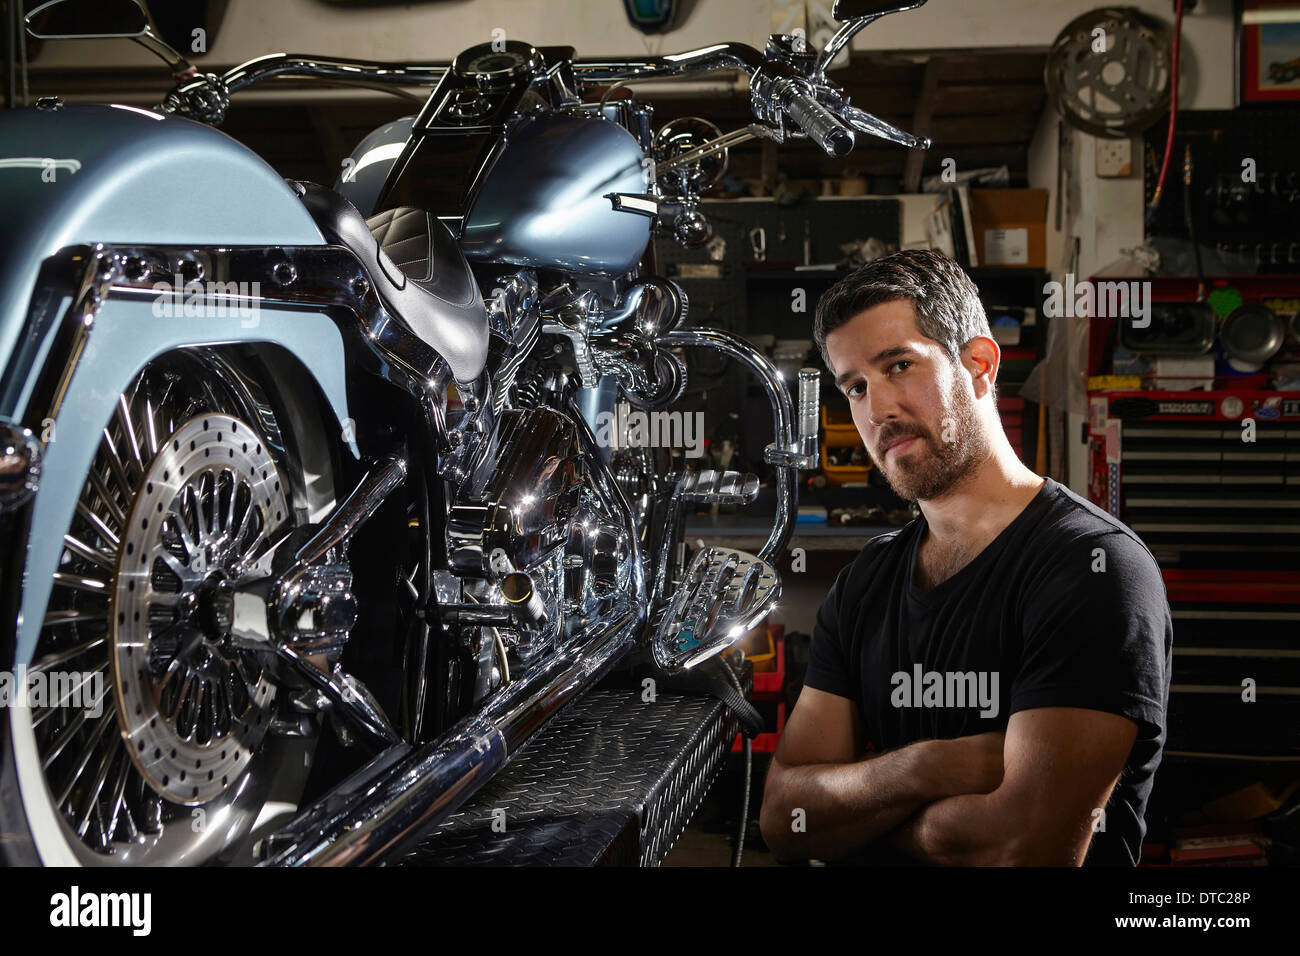 Portrait of mid adult man in motorcycle repair workshop Stock Photo